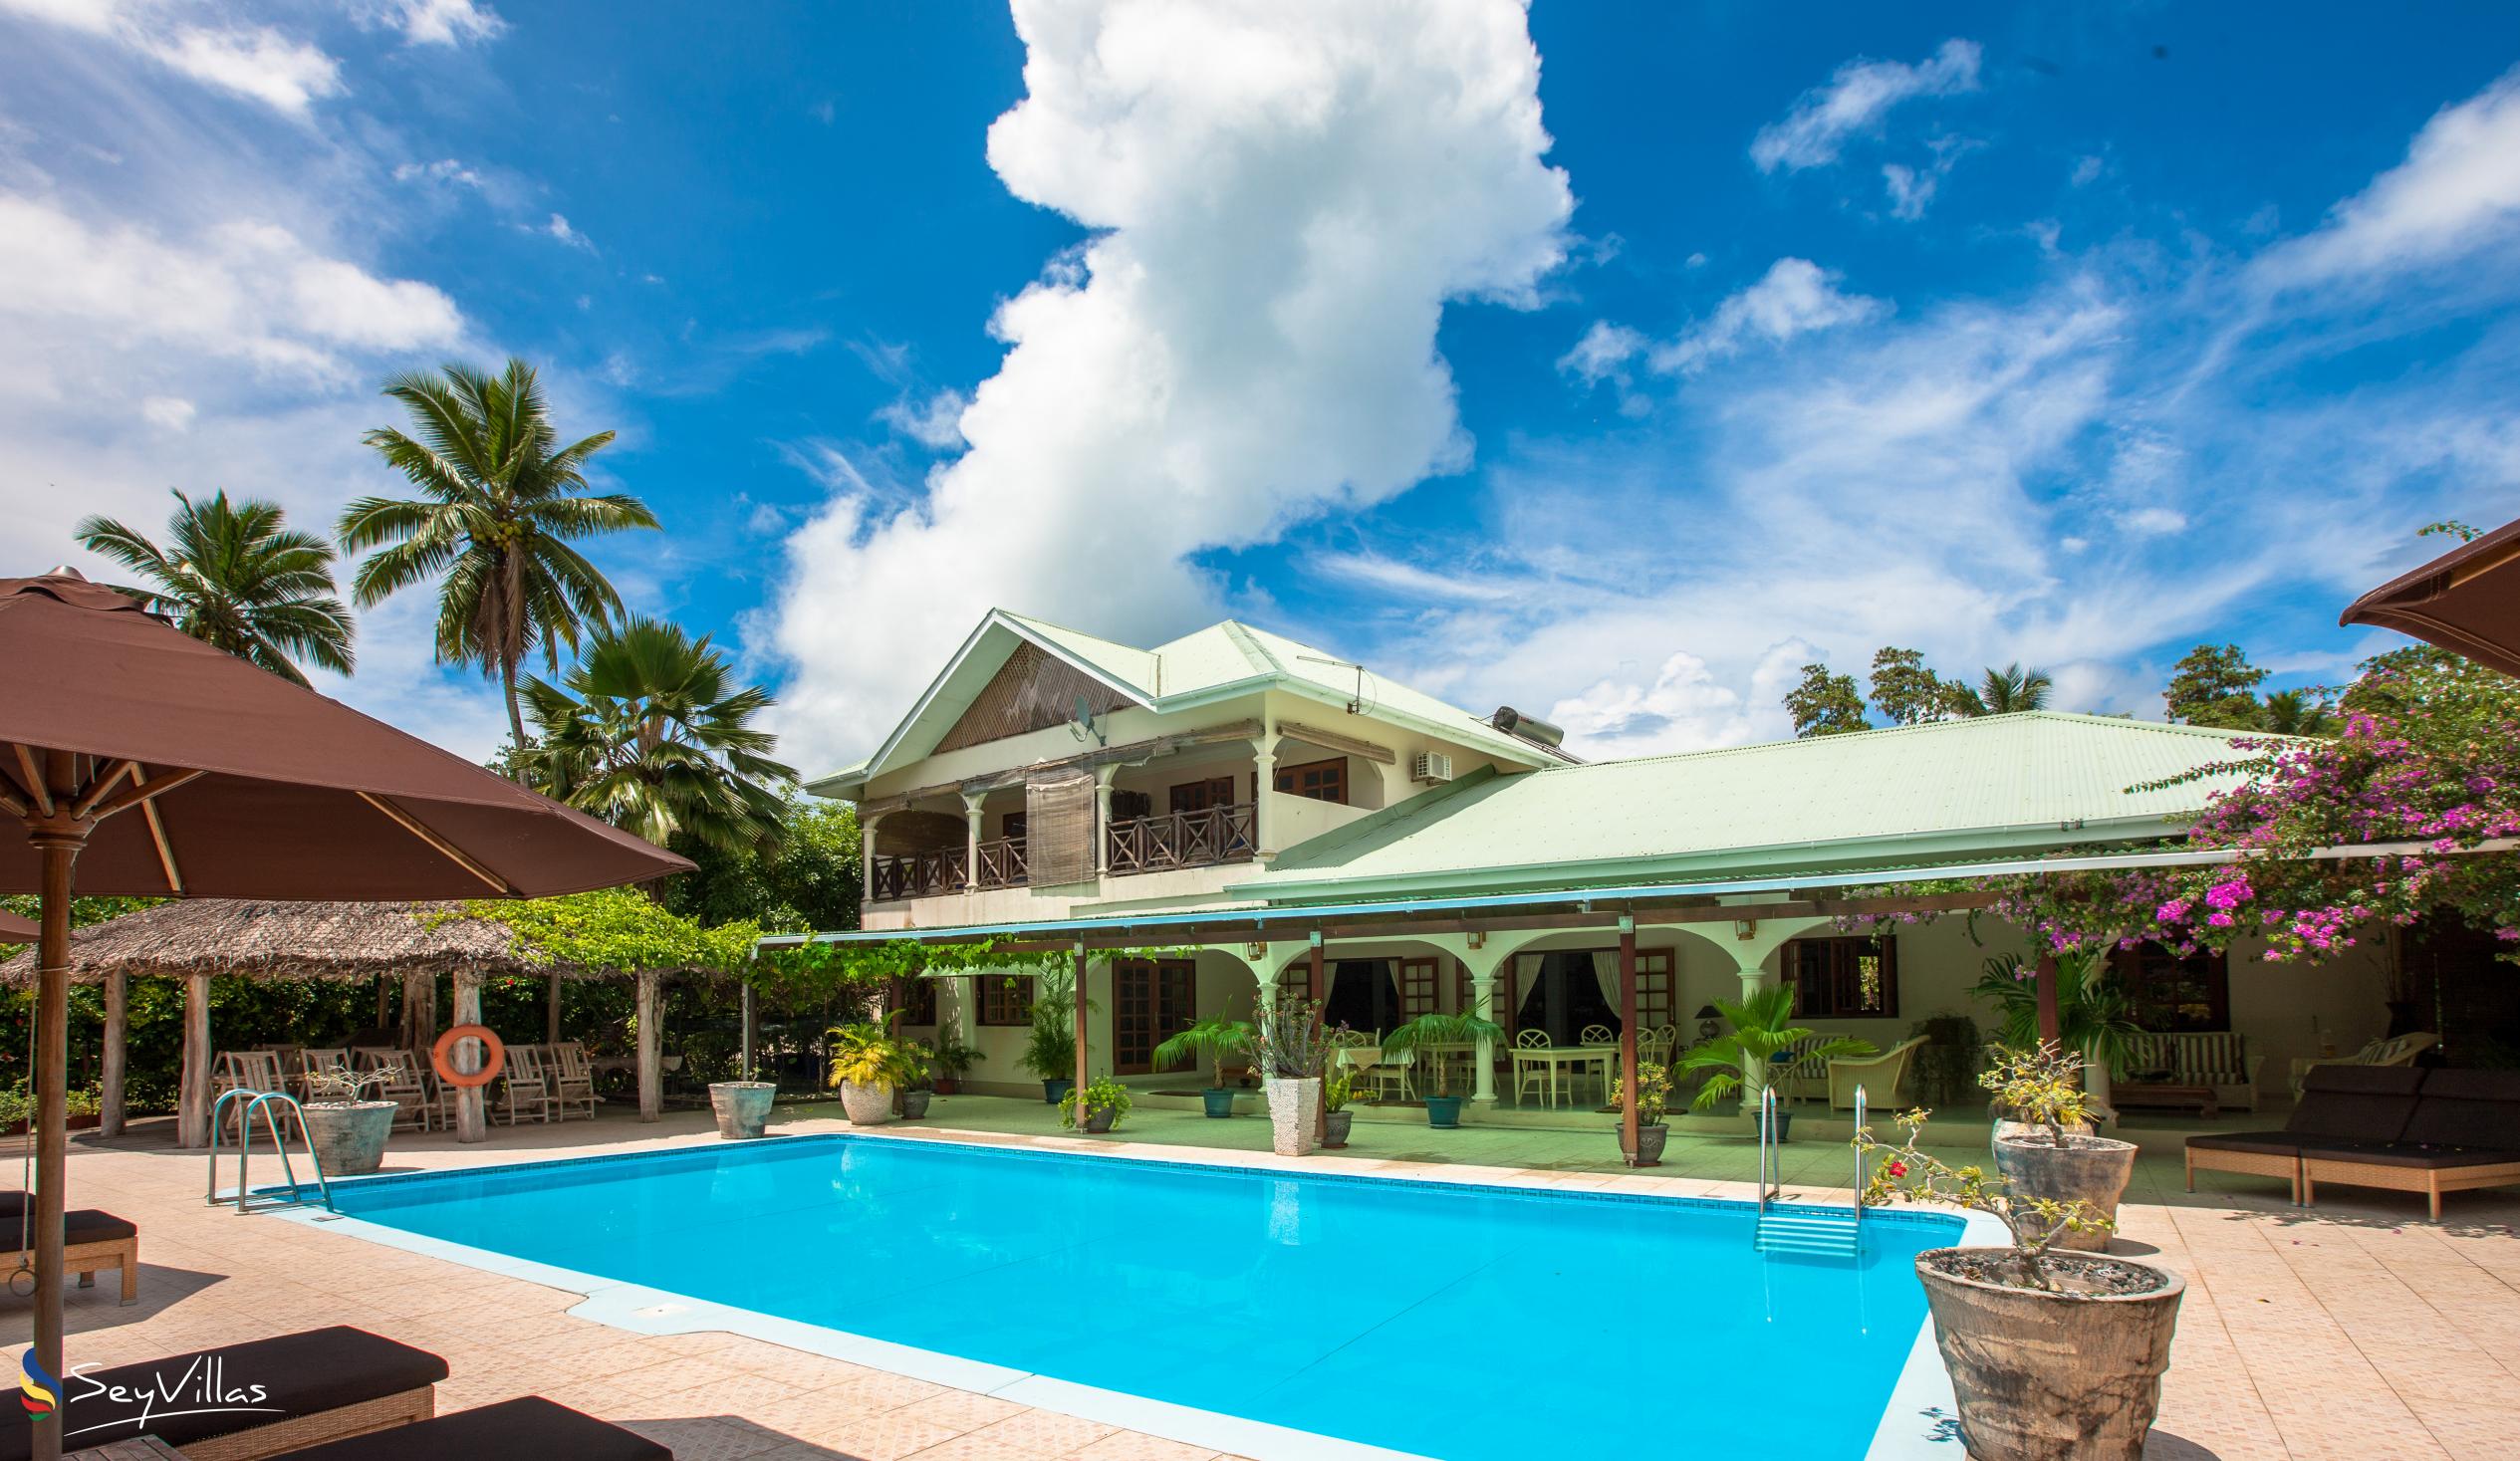 Foto 3: Villa de Cerf - Esterno - Cerf Island (Seychelles)